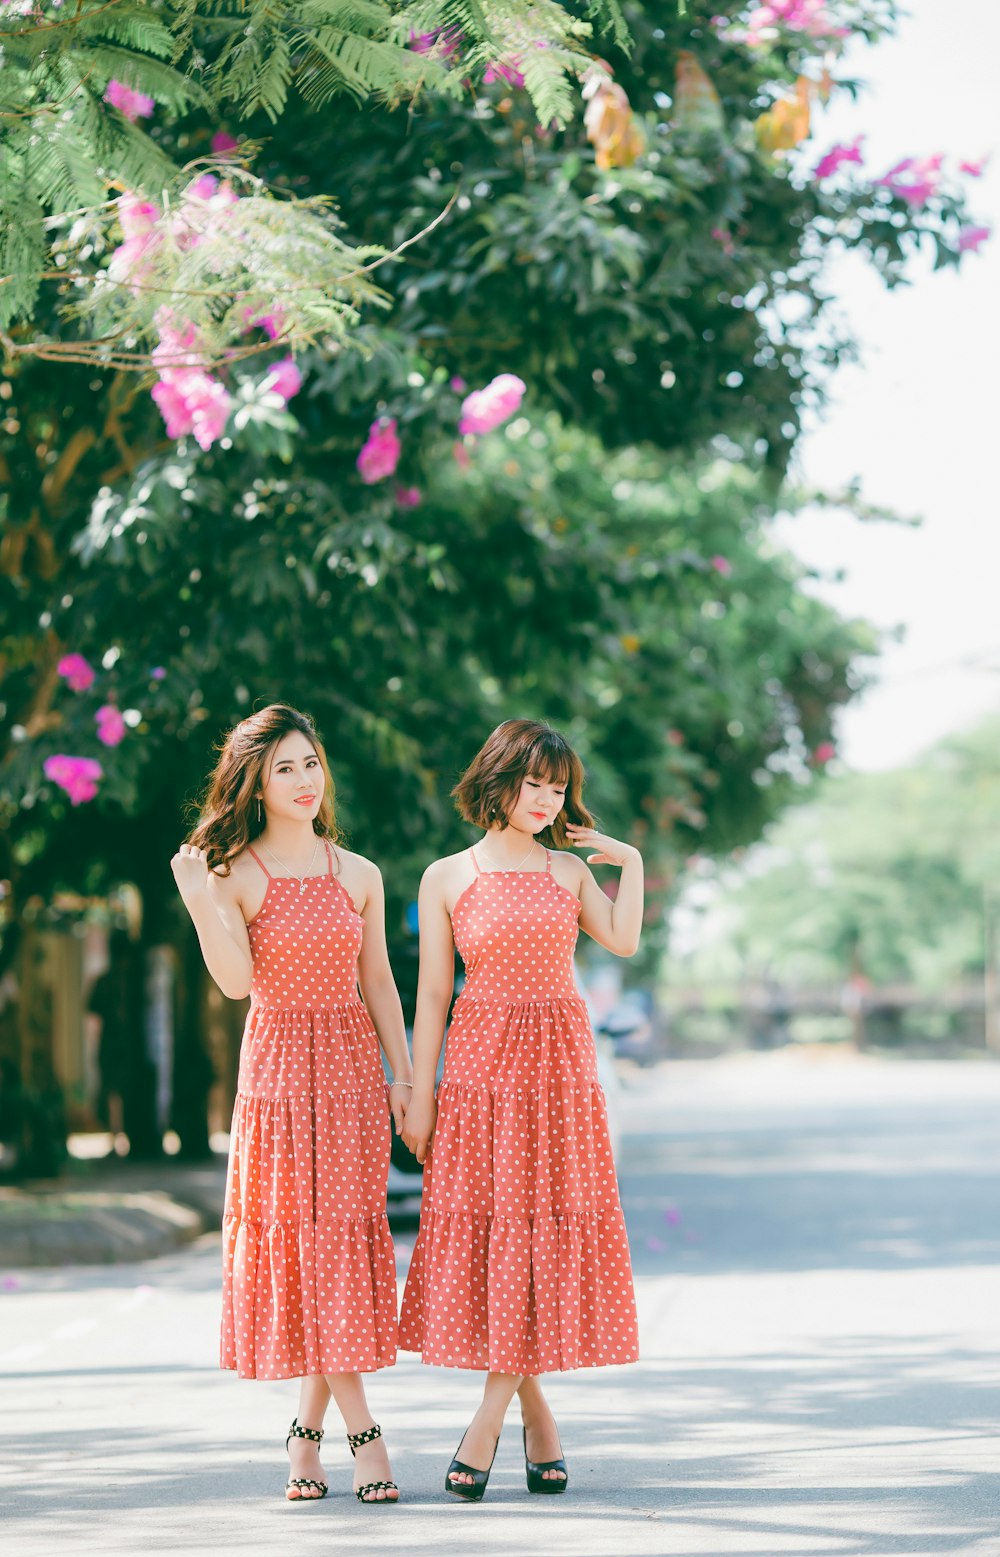 Dos mujeres con vestidos de lunares rojos y blancos de pie en la carretera cerca de flores de pétalos rosados durante el día